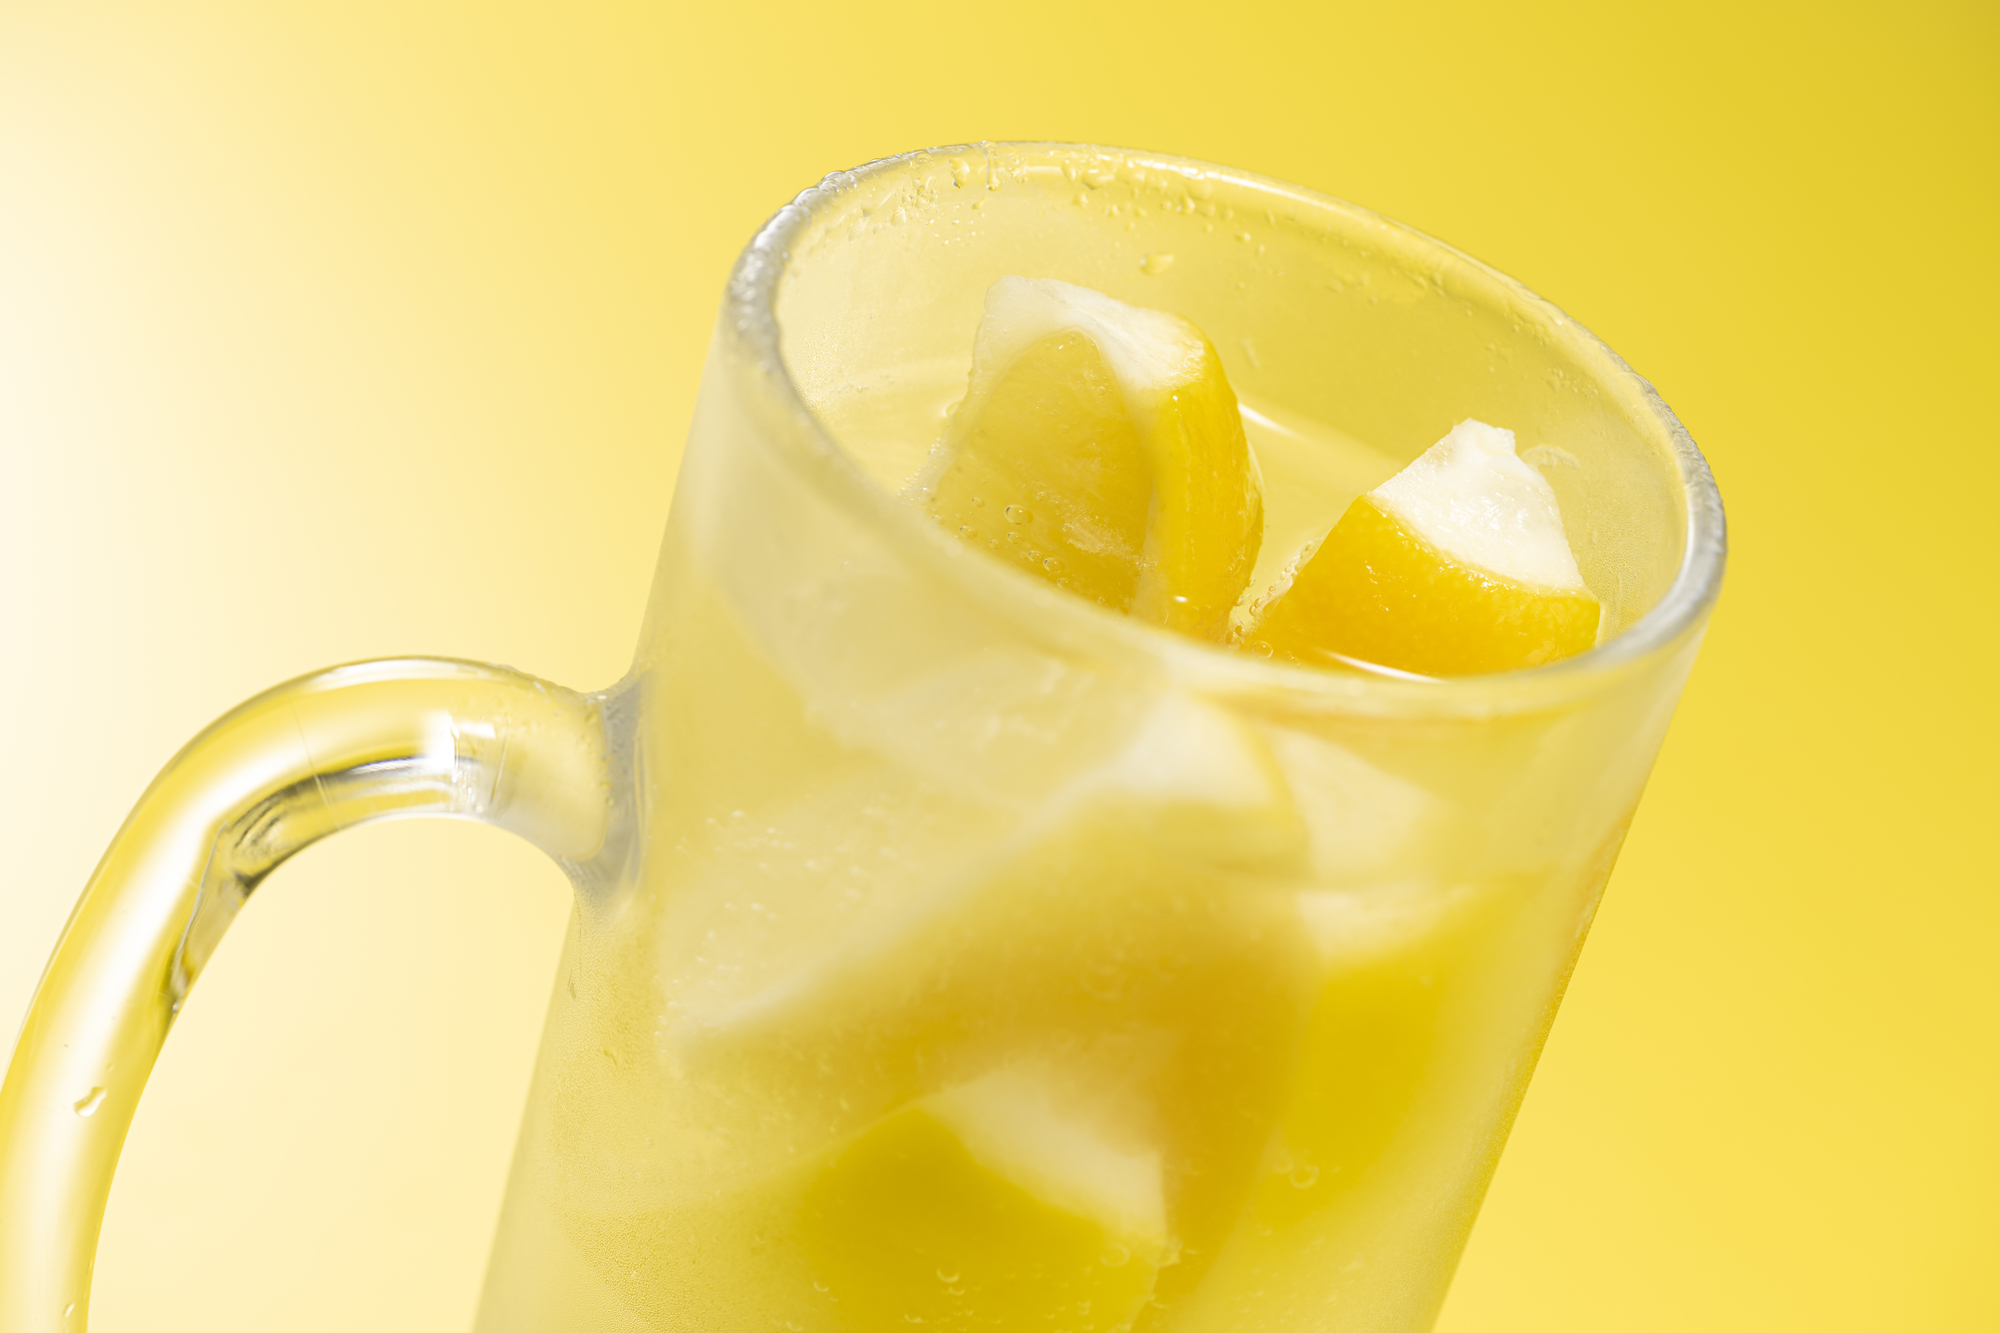 冷凍レモン